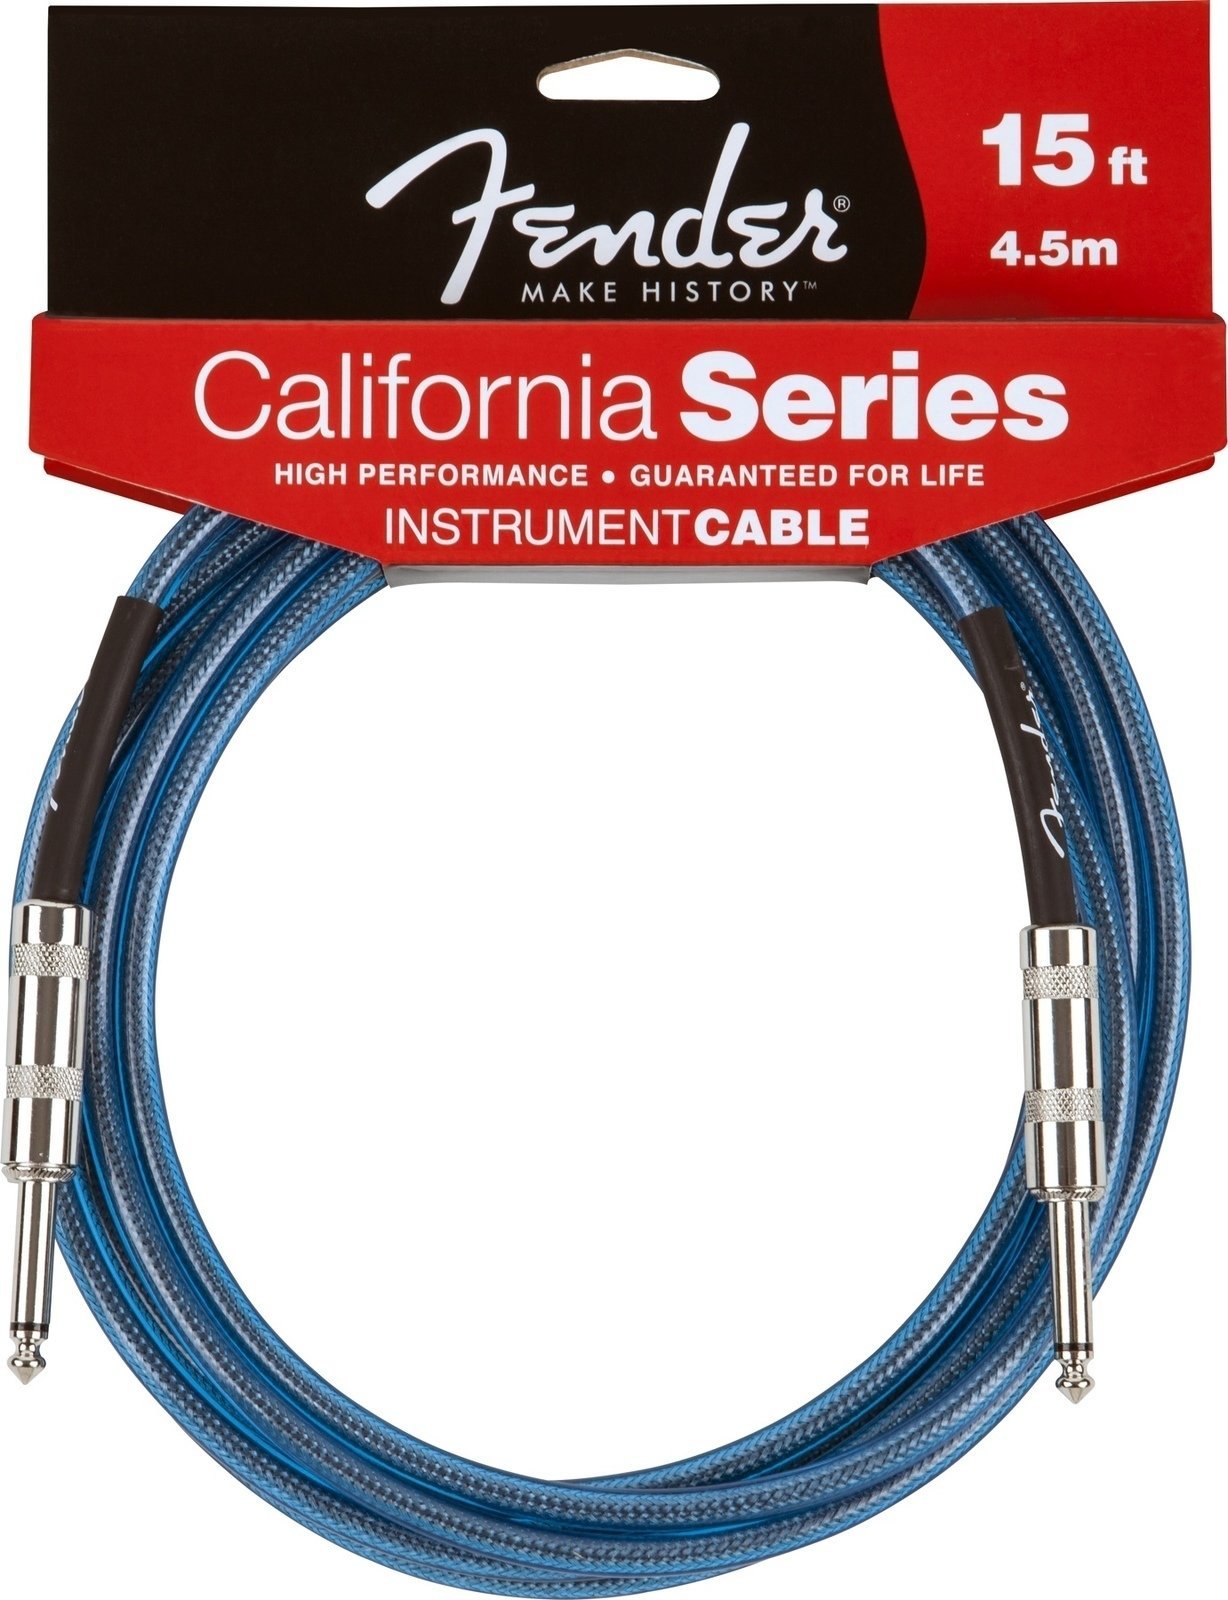 Câble pour instrument Fender California Instrument Cable 4,5m - Lake Placid Blue